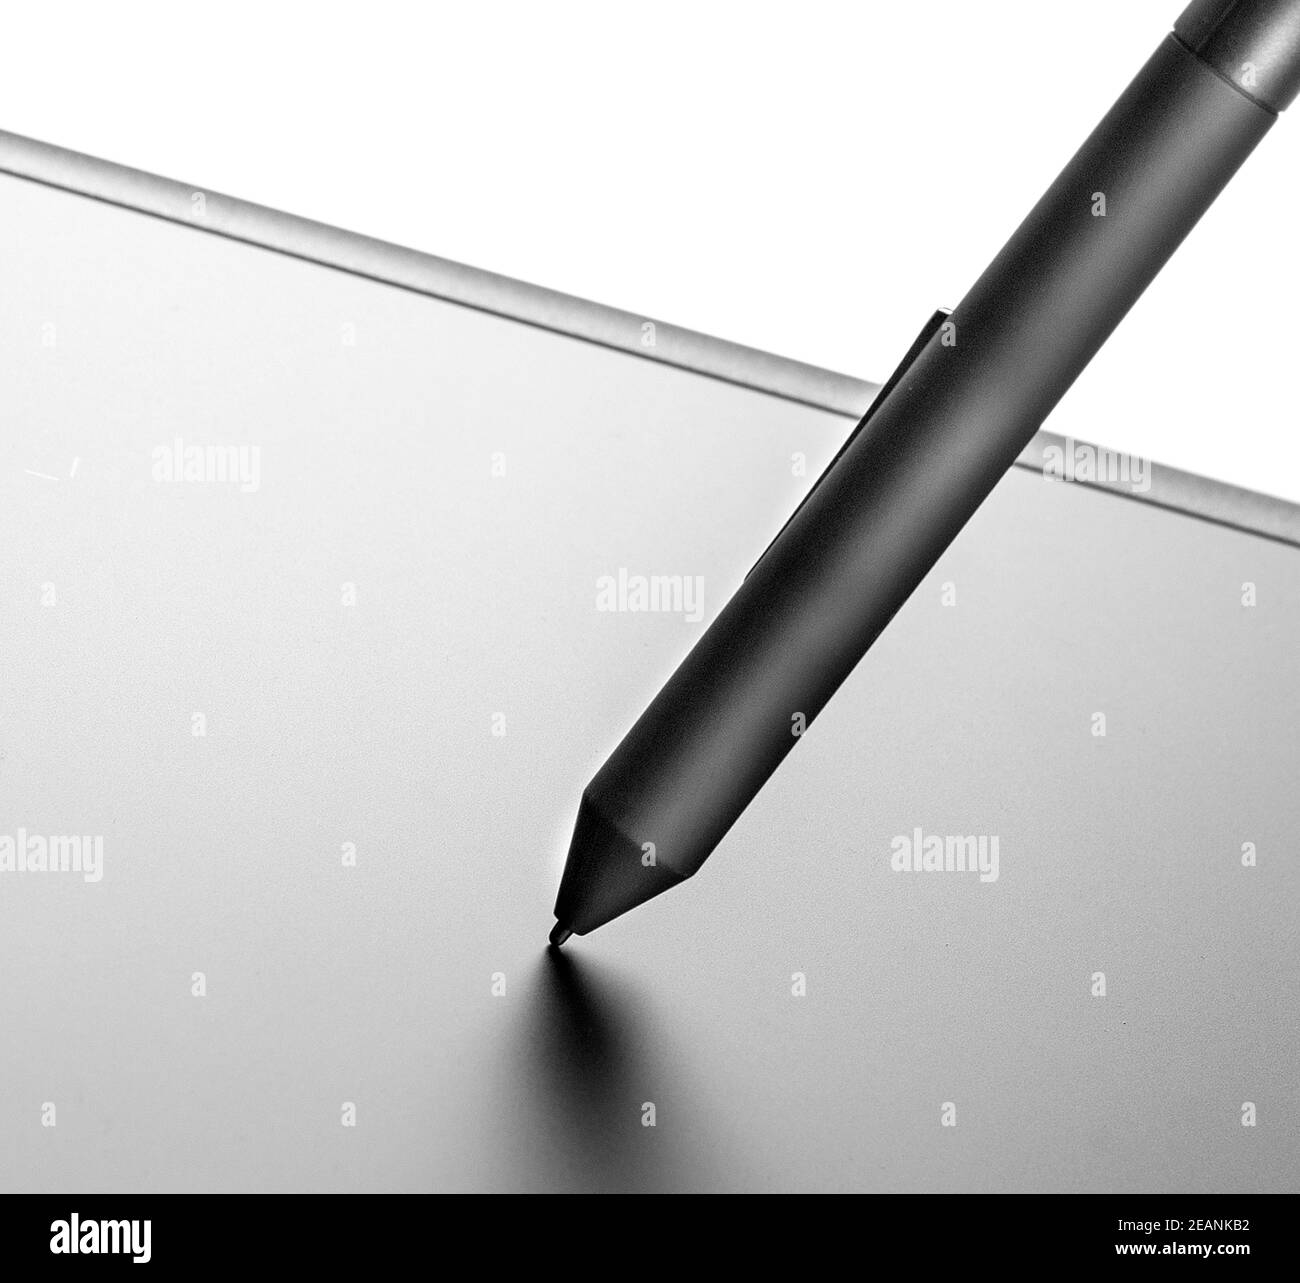 La tablette graphique avec le crayon noir sur fond blanc Banque D'Images